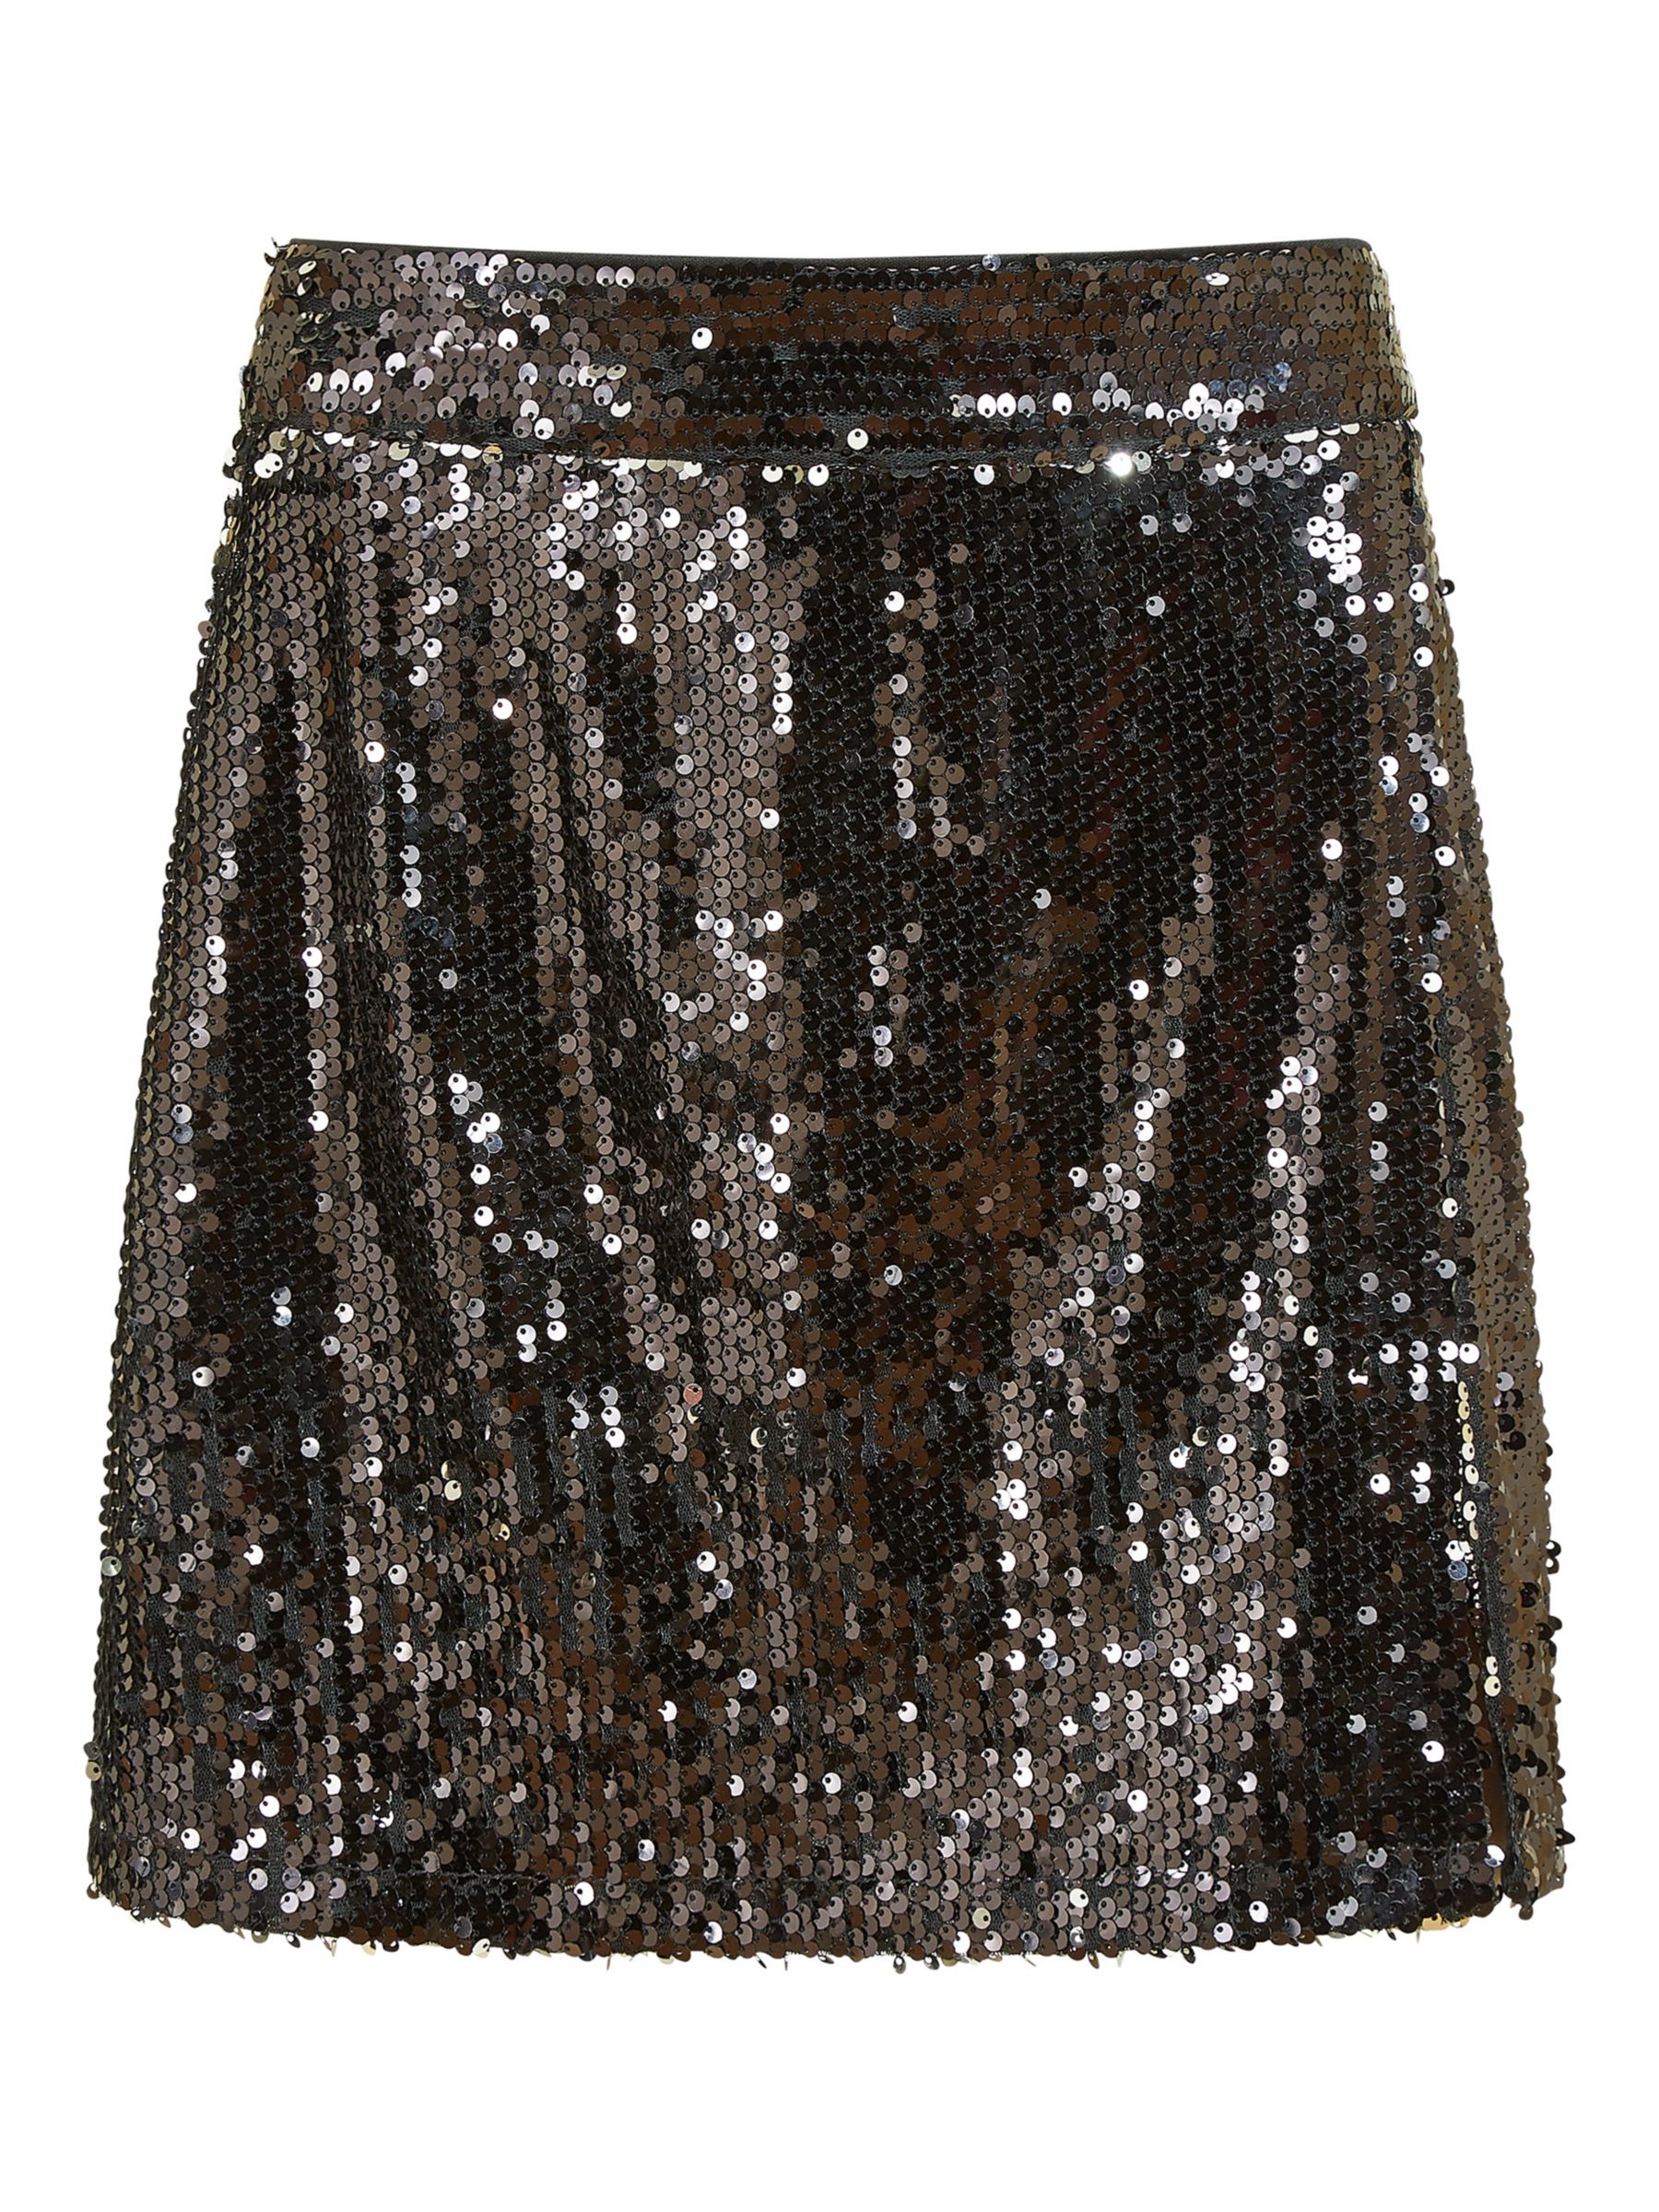 Buy Mela London Sequin Mini Skirt, Black Online at johnlewis.com